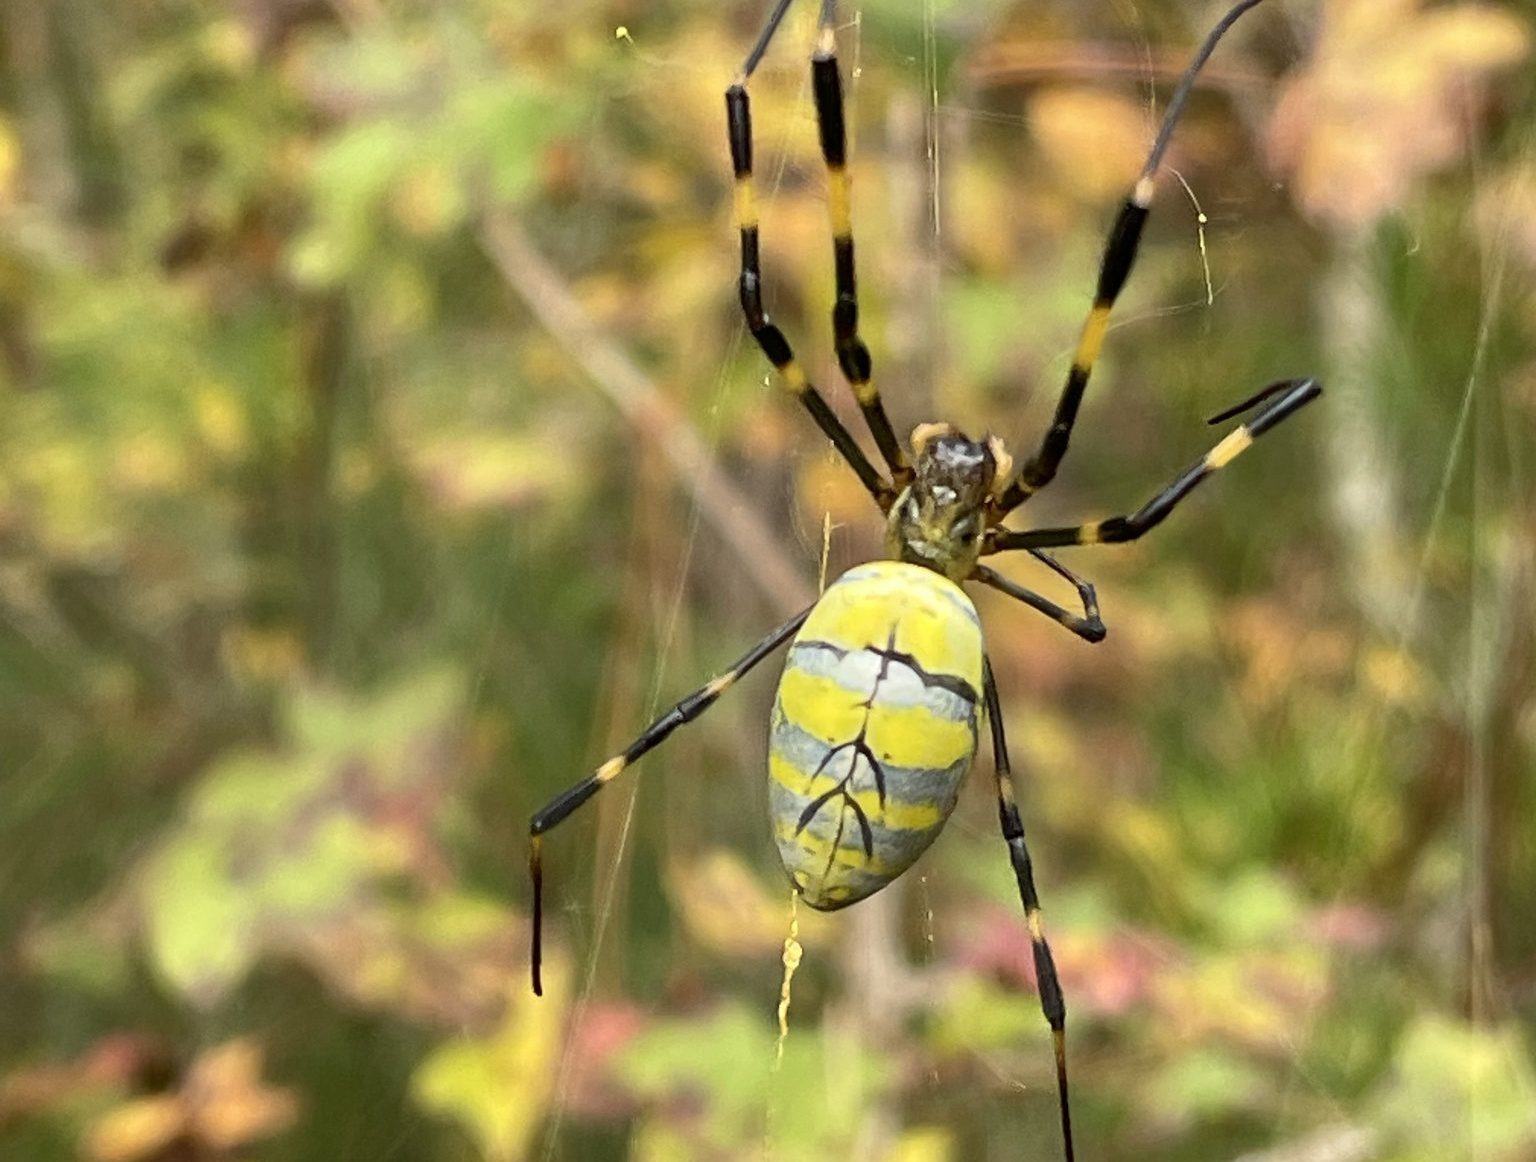 Joro Spider (credit: Pam Overmyer)